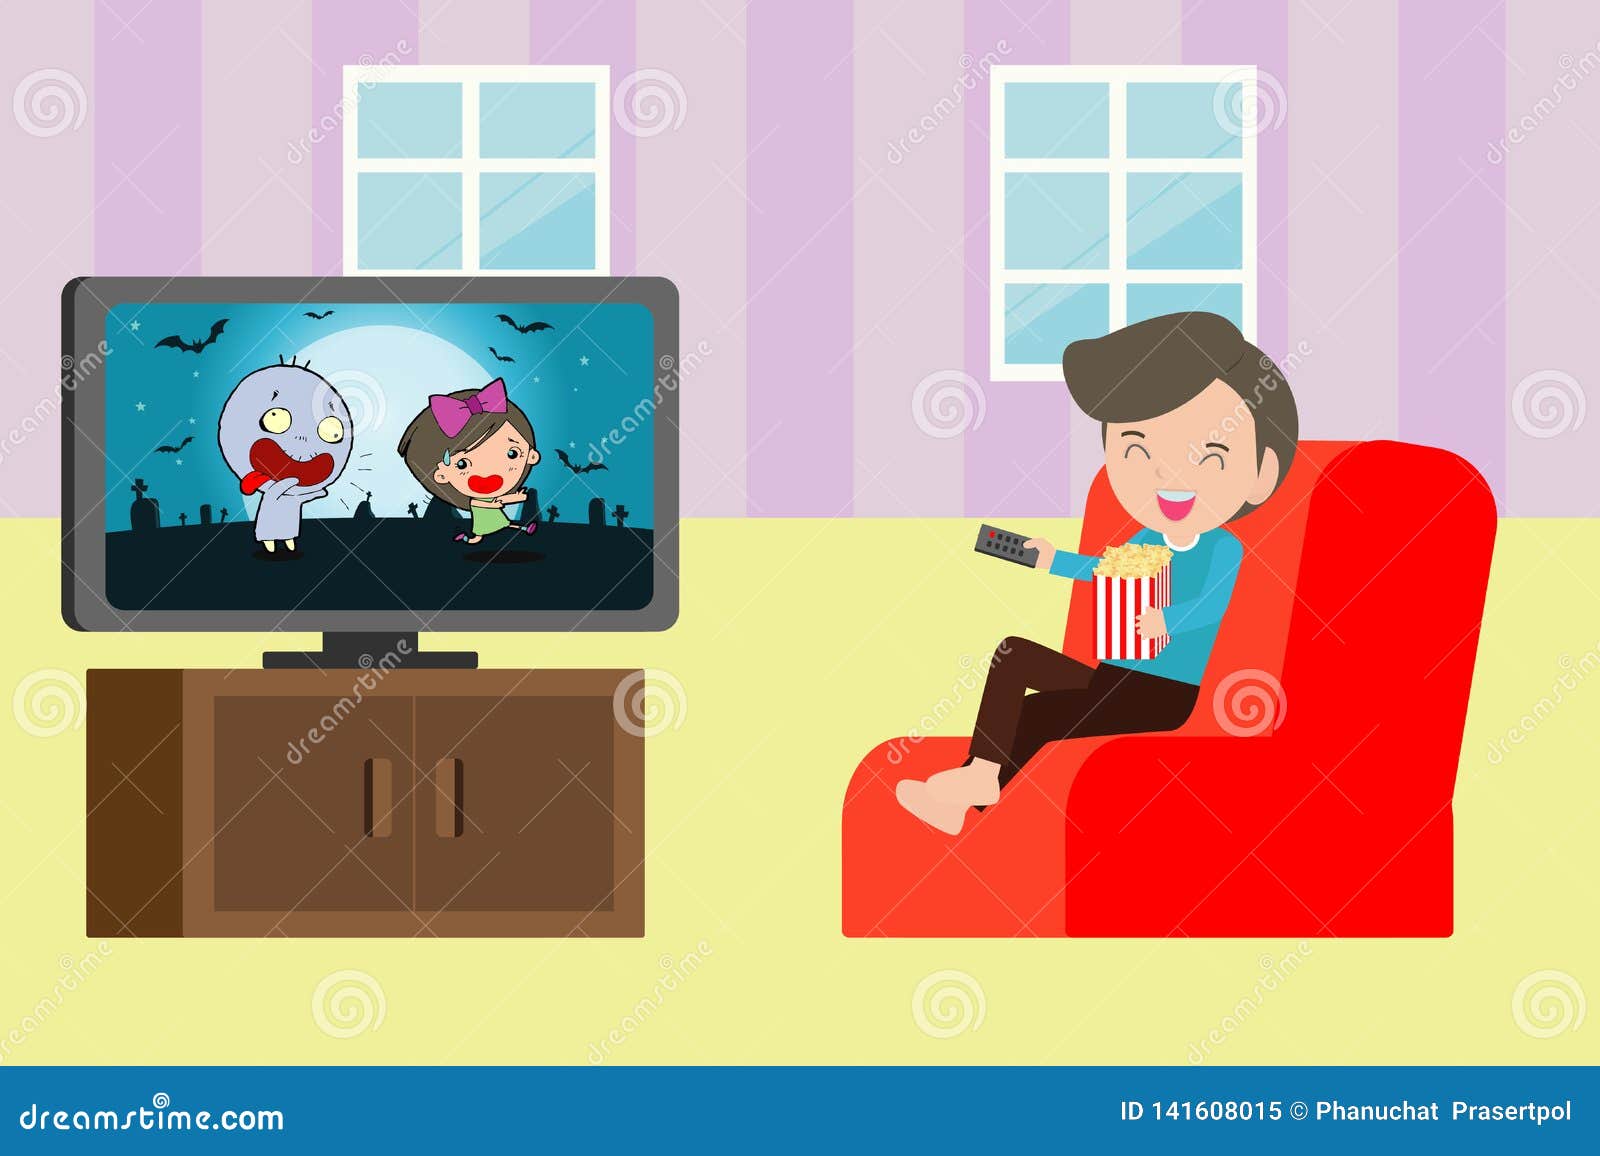 Телевизор сиди дома. Мальчик у телевизора. Телевизор иллюстрация. Мальчик смотрит телевизор иллюстрация. Ребенок сидит за телевизором.